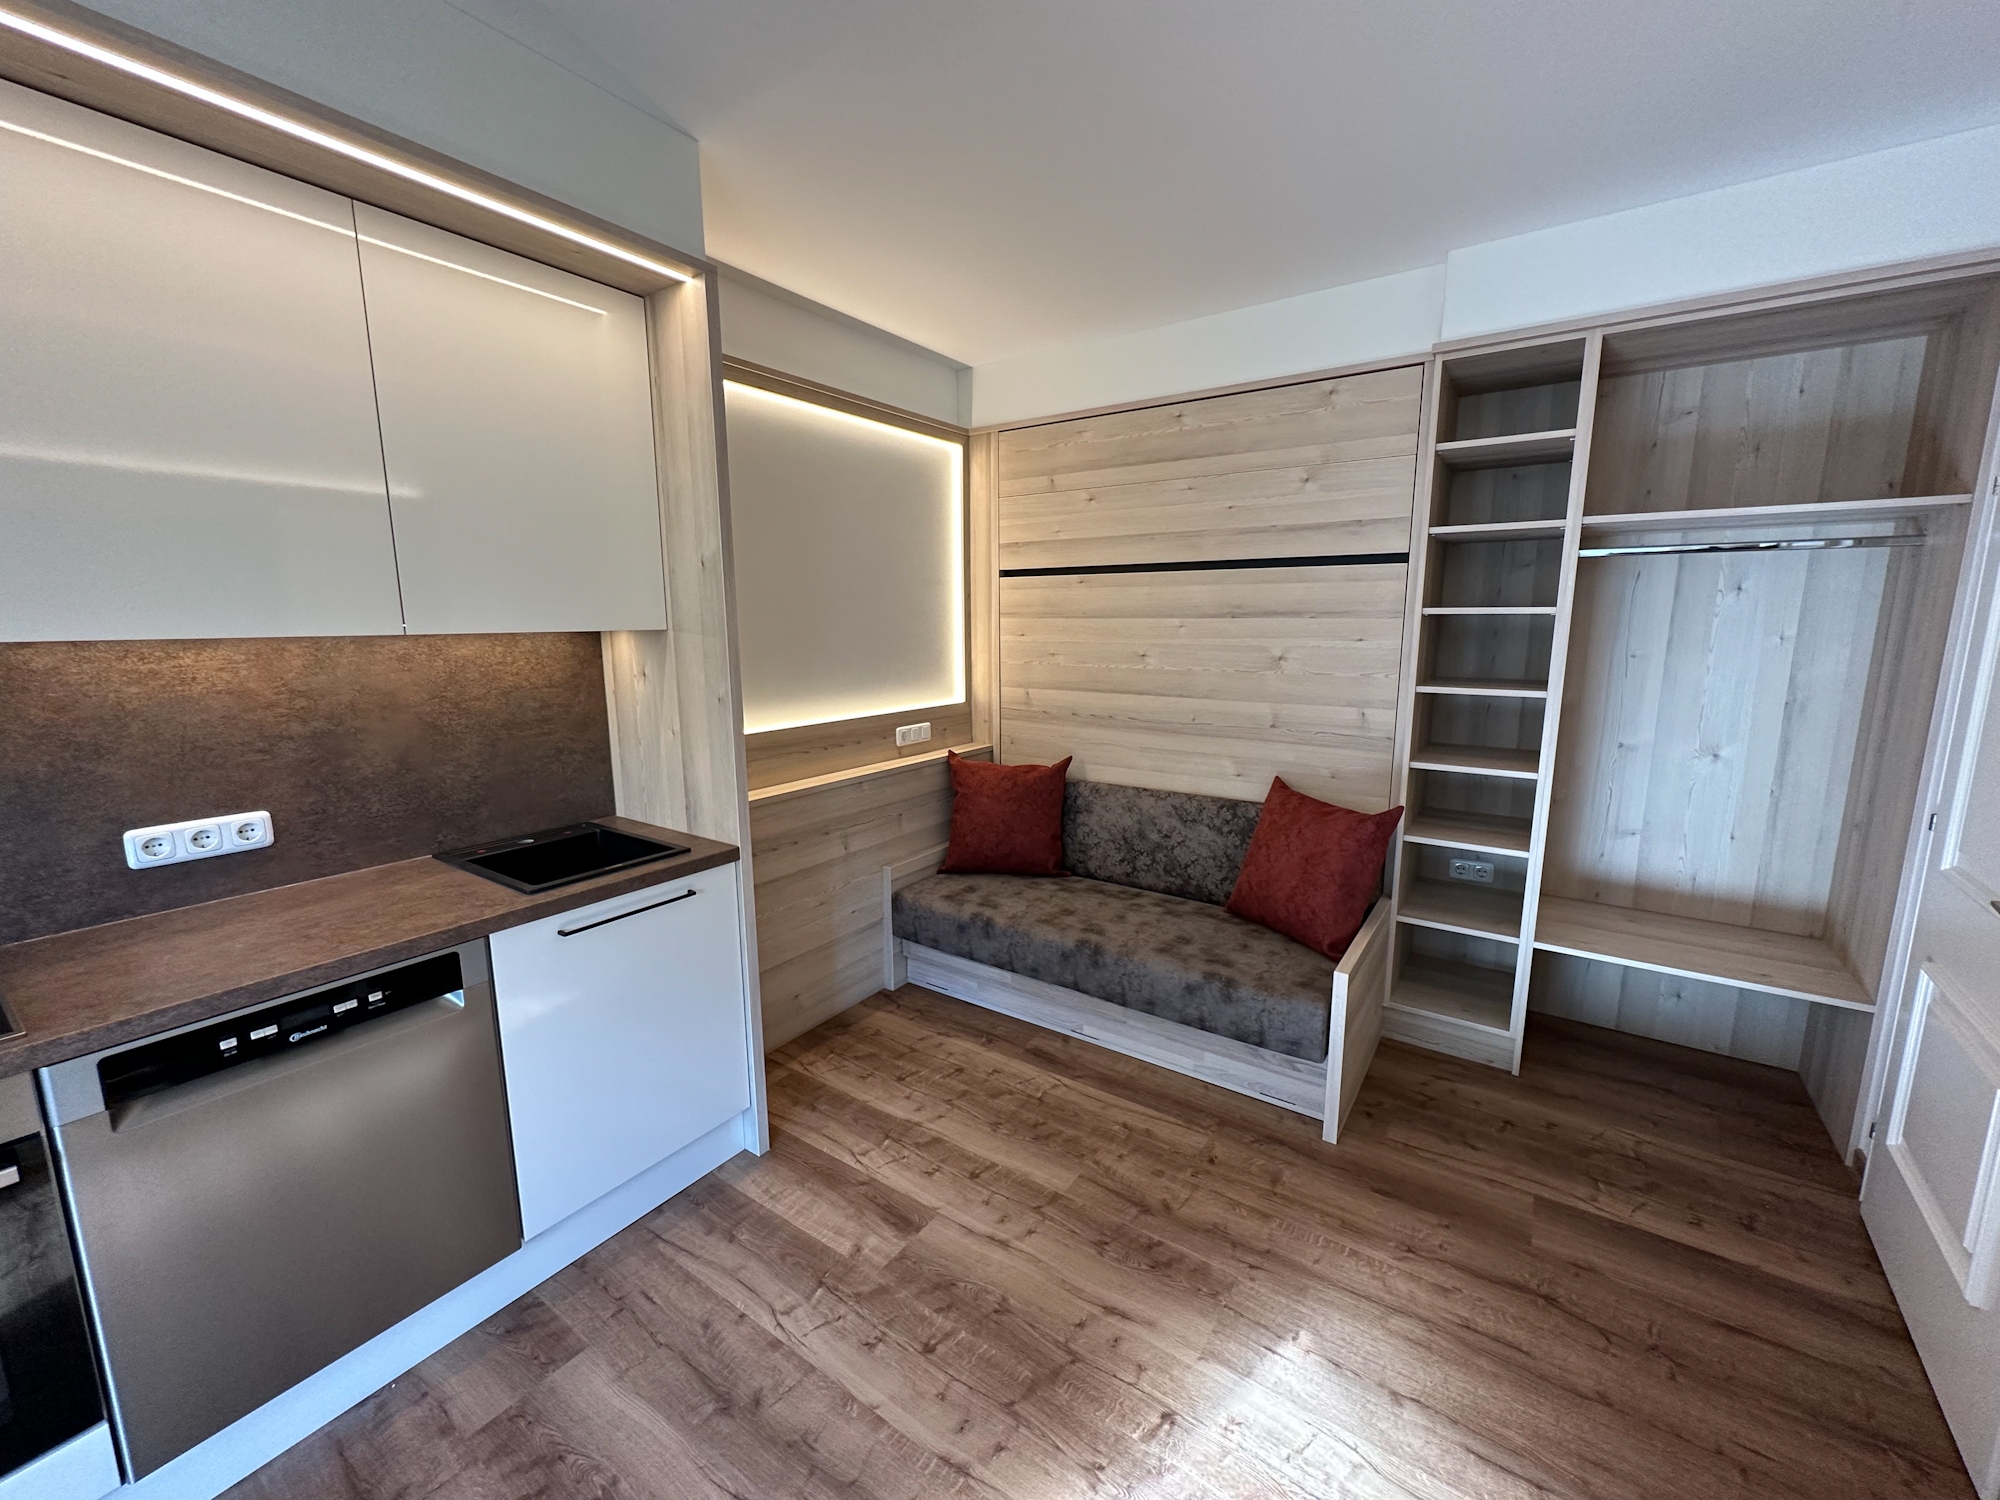 Appartementhaus Zillertal: Ferienwohnung für 2 Personen - Wohnbereich mit Küchenzeile (Beispiel)